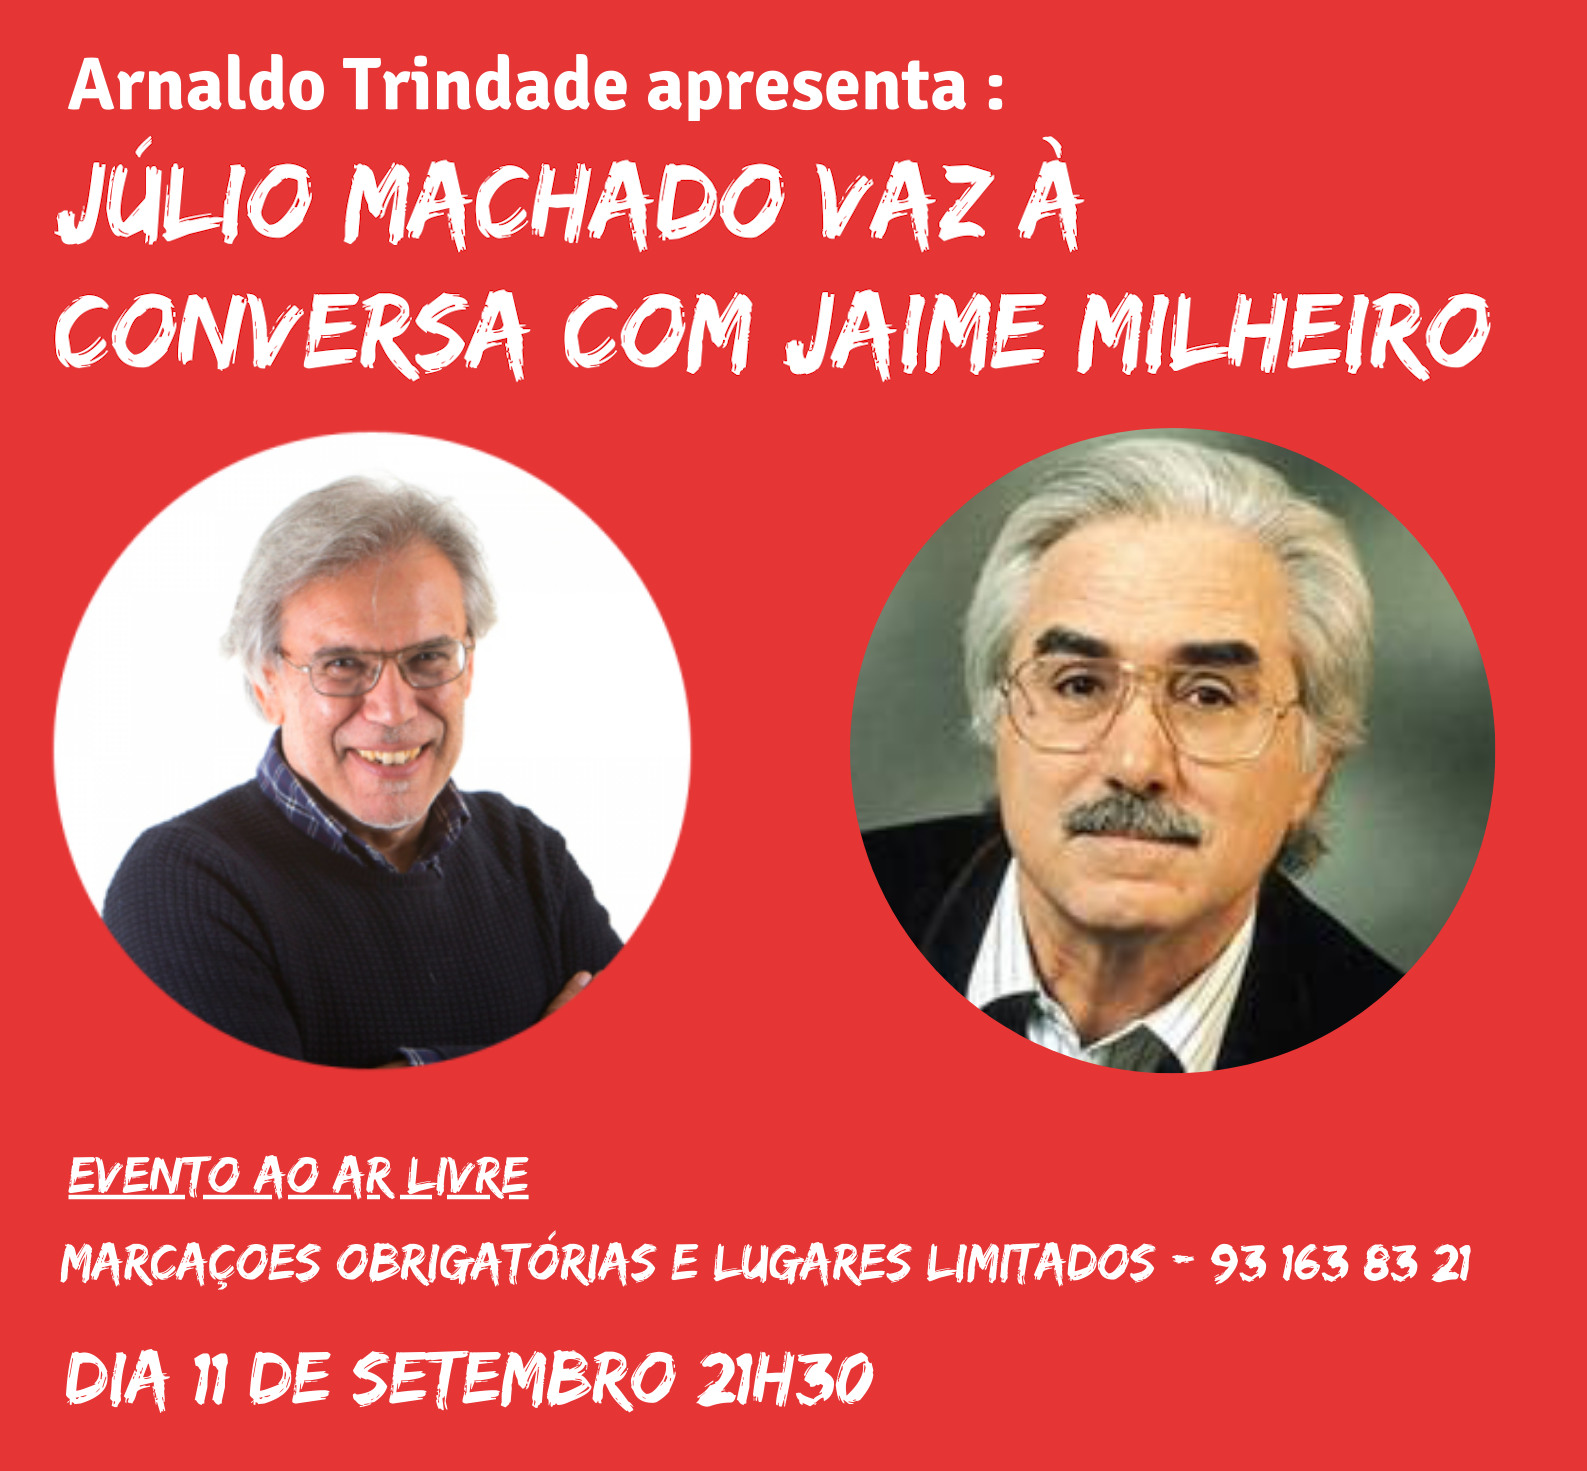 Leia mais sobre Júlio Machado Vaz e Jaime Milheiro